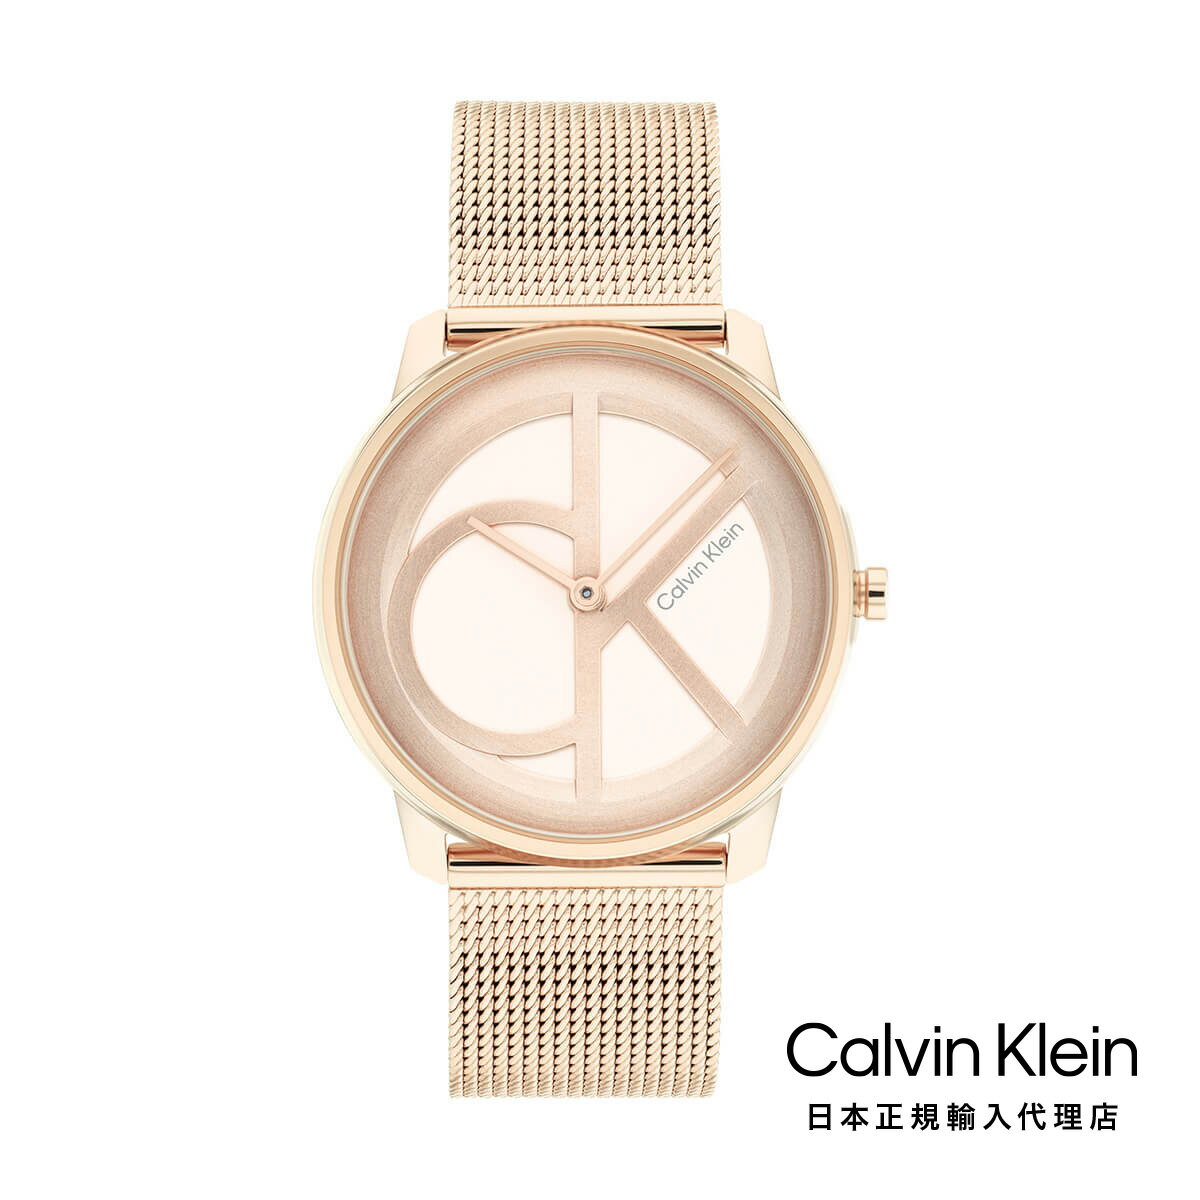 Calvin Klein カルバンクライン 腕時計 レディース ブランド アイコニック 35MM カーネーションゴールド ダイヤル メッシュ きれいめ 仕事用